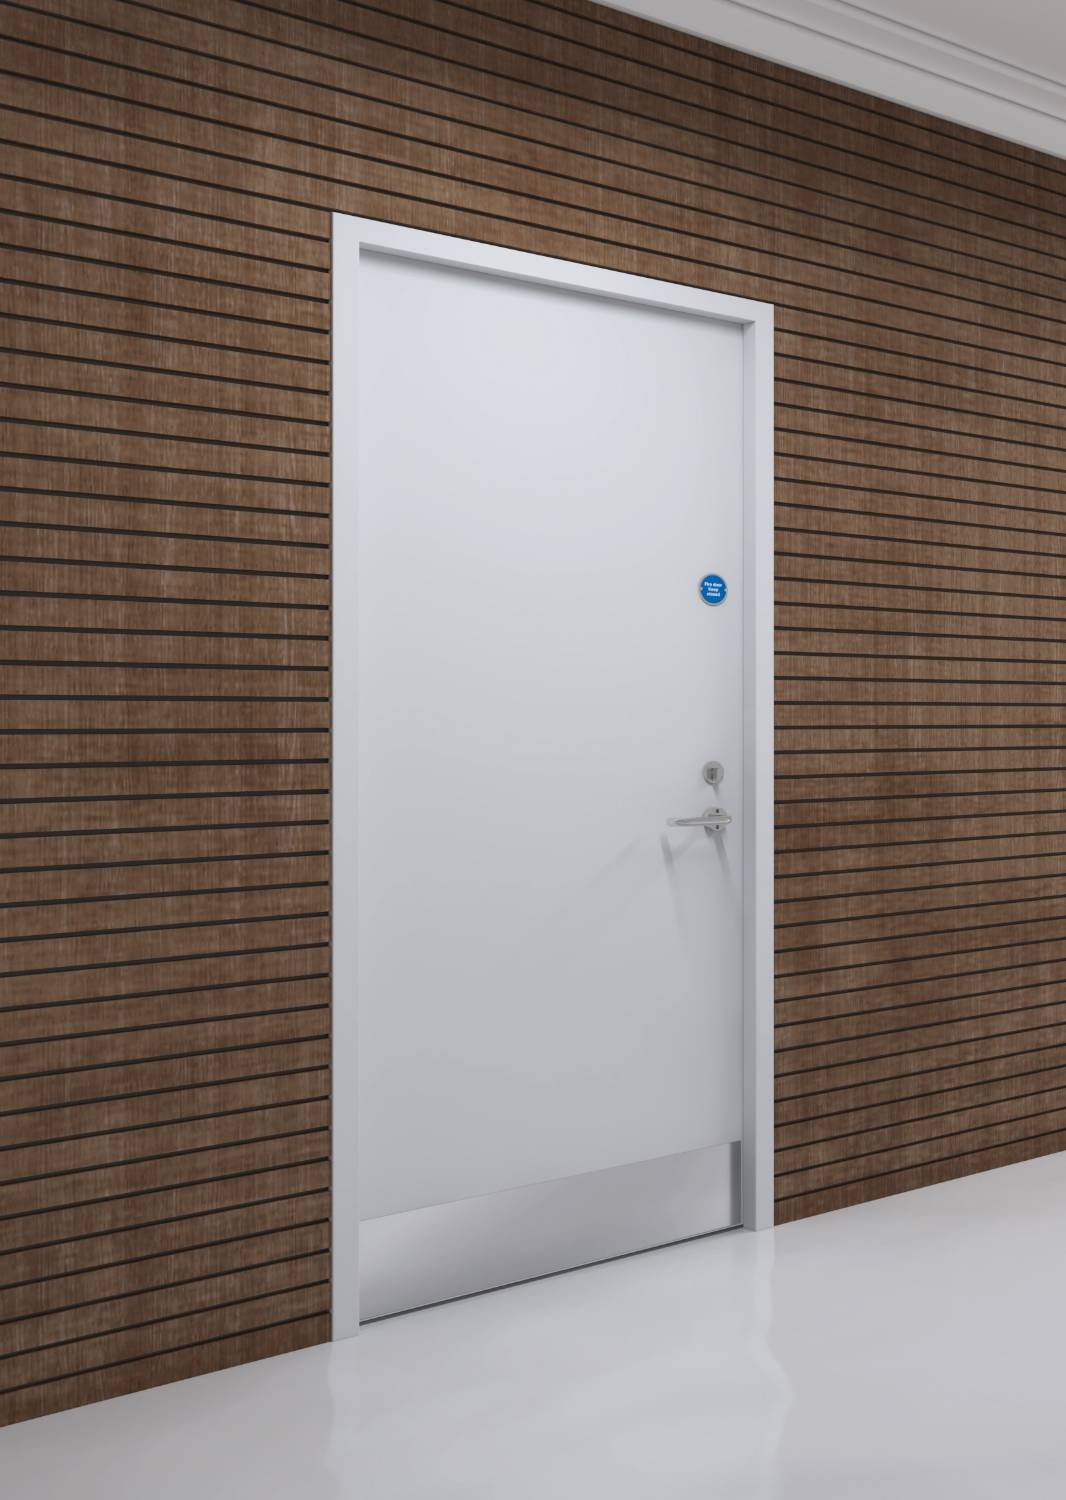 EBD 44 Security - Security Door